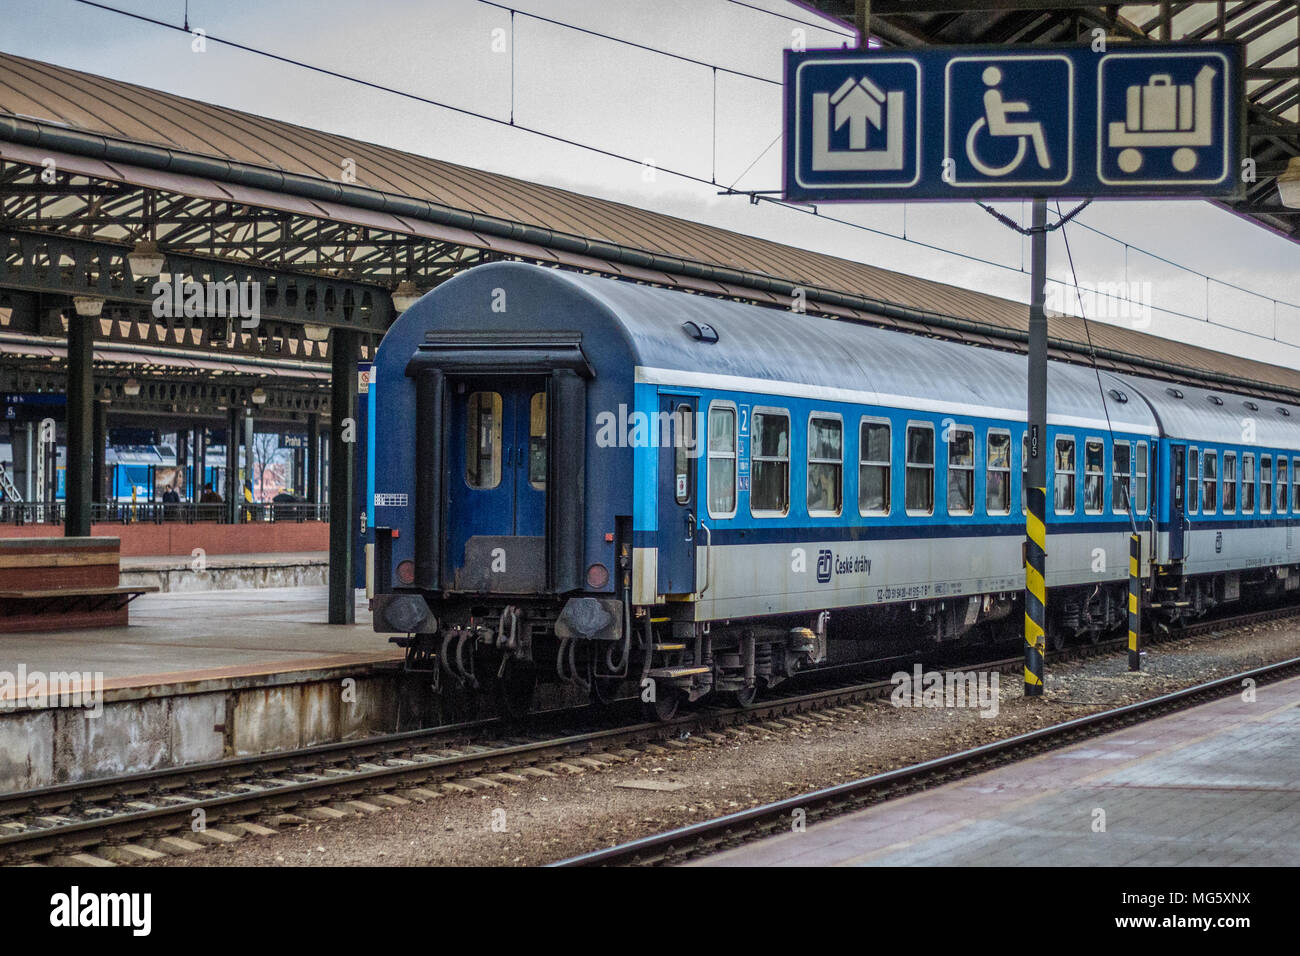 Schnellzug der Tschechischen Bahn im Prager Hauptbahnhof. Tage der alten Schnellzugwagen aus DDR-Produktion sind nunmehr auch in Tschechien und der Slowakei gezählt Sterben. Stockfoto